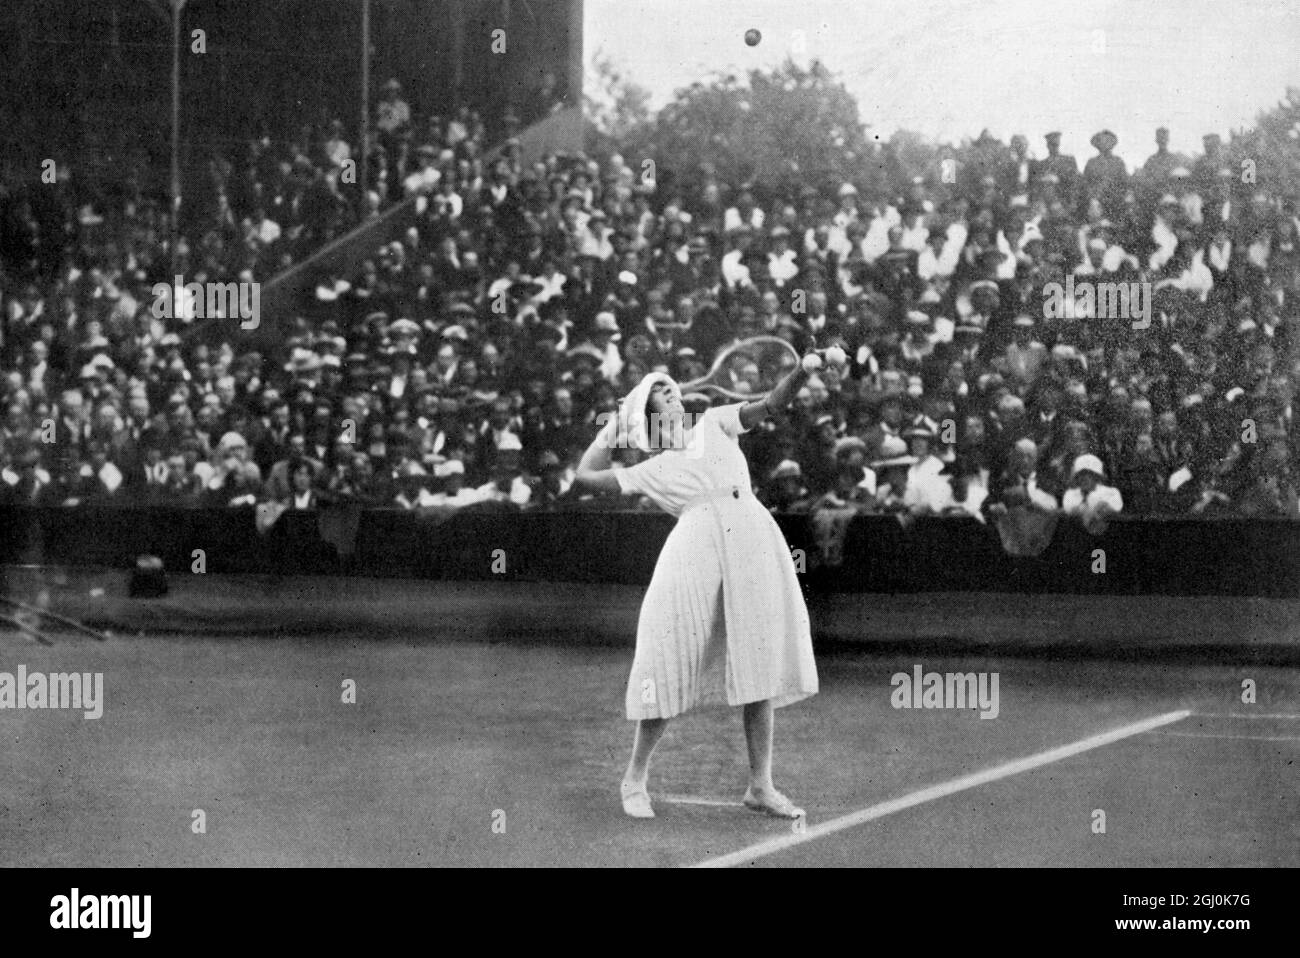 Damen Einzel Herausforderung Runde : Mlle. Lenglen (Herausforderer) im Jahr 1919. Suzanne Rachel Flore Lenglen (24. Mai 1899 - 4. Juli 1938) war eine französische Tennisspielerin, die von 1914 bis 1926 31 Grand-Slam-Titel gewann. Als extravagante, zukunftsweisende Athletin war sie die erste weibliche Tennisberühmtheit und eine der ersten internationalen Sportstars, die von der französischen Presse La Divine (die göttliche) genannt wurde. ©TopFoto Stockfoto